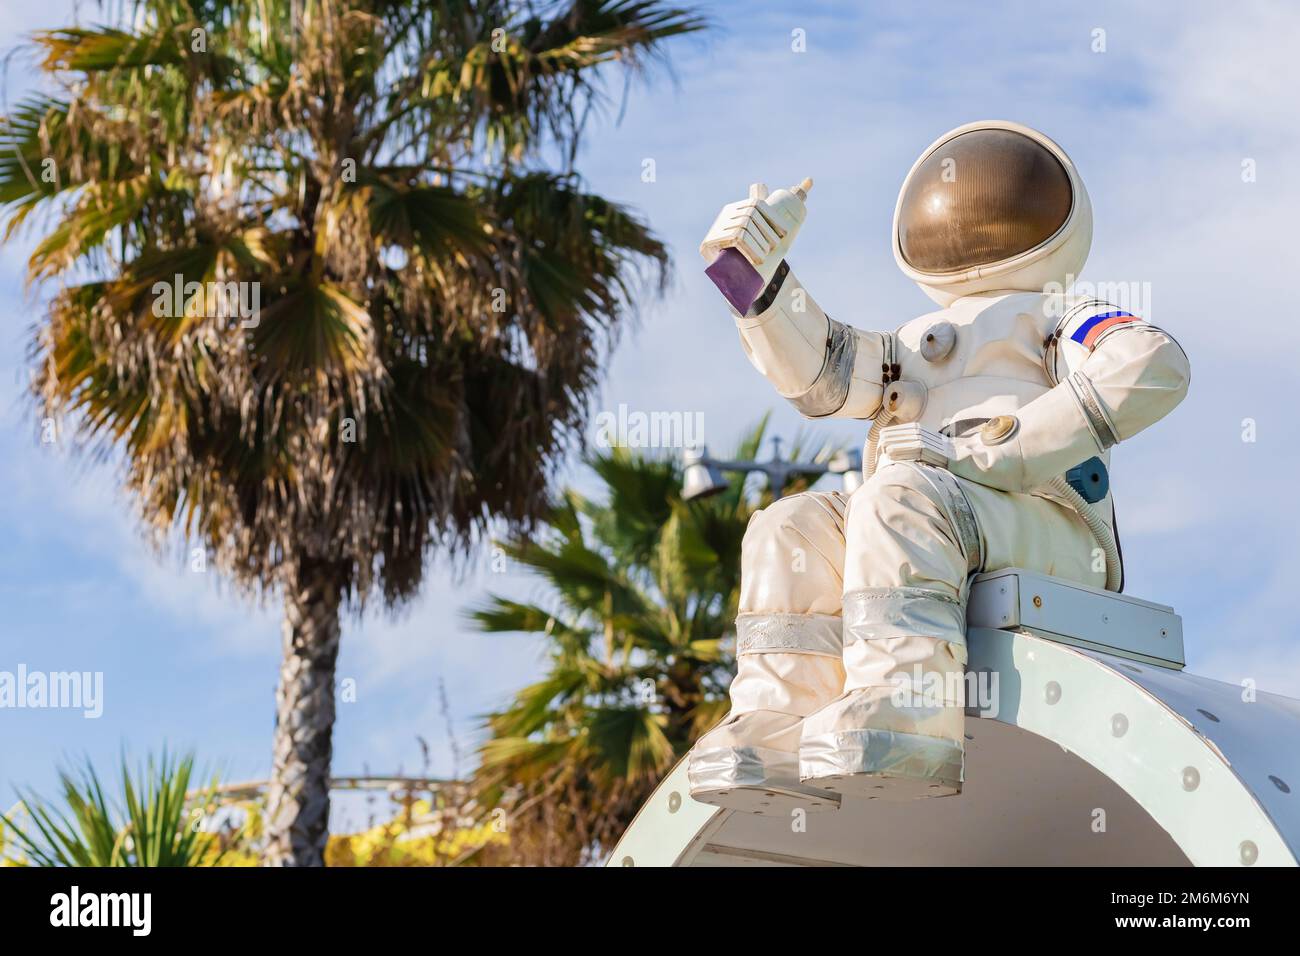 Una figurina di un astronauta in una tuta spaziale che tiene in mano un tubo di cibo si siede sullo sfondo di palme e cielo Foto Stock